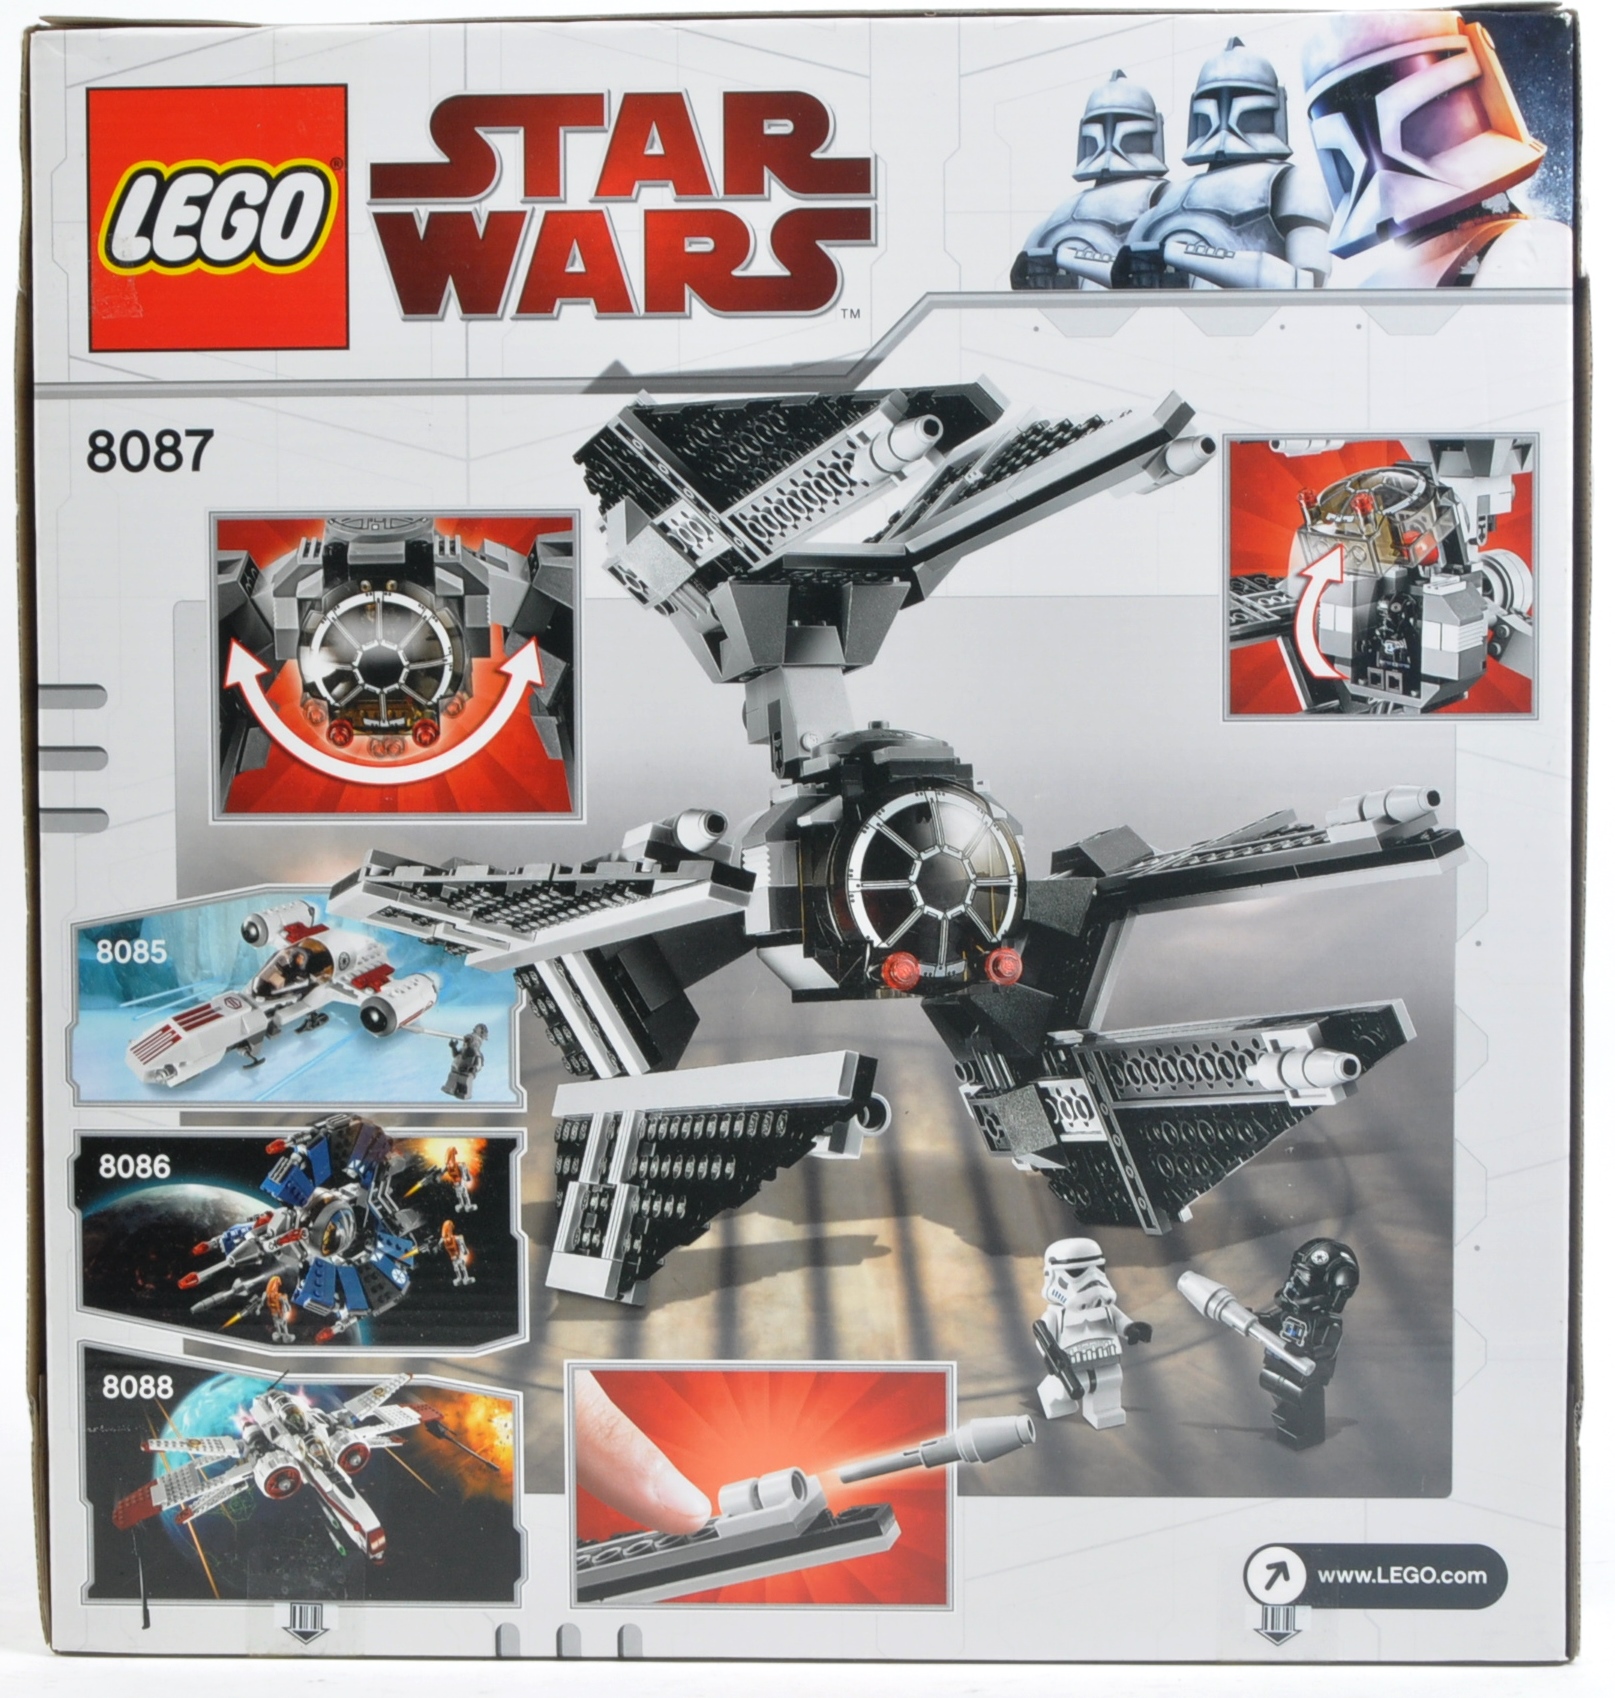 LEGO SET - LEGO STAR WARS - 8087 - TIE DEFENDER - Image 2 of 4